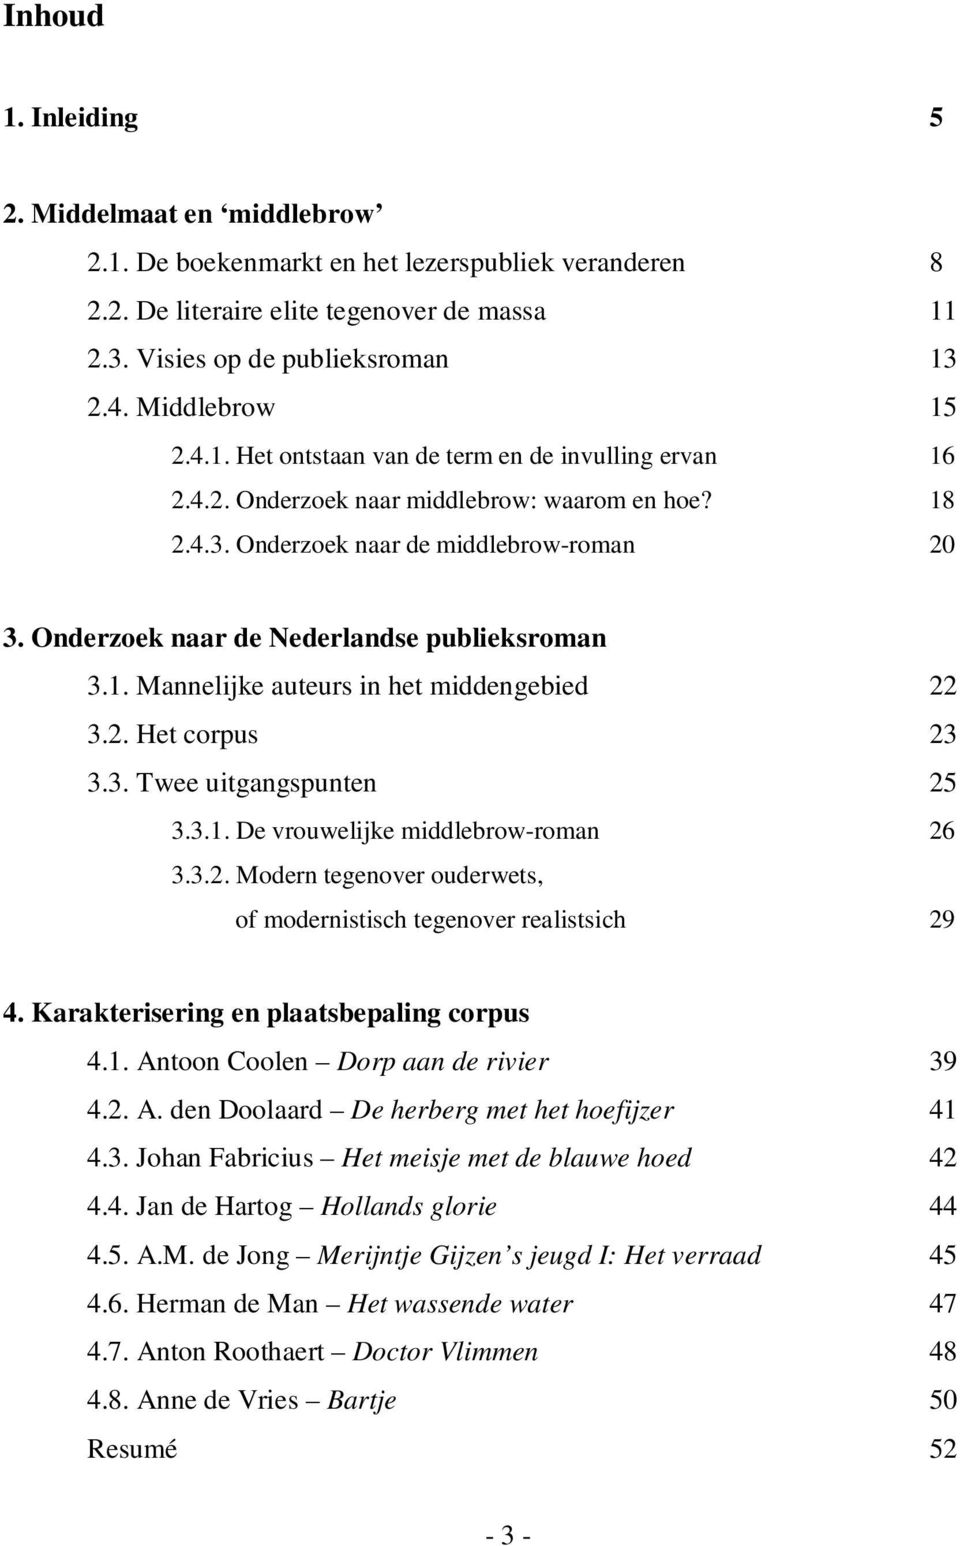 Onderzoek naar de Nederlandse publieksroman 3.1. Mannelijke auteurs in het middengebied 22 3.2. Het corpus 23 3.3. Twee uitgangspunten 25 3.3.1. De vrouwelijke middlebrow-roman 26 3.3.2. Modern tegenover ouderwets, of modernistisch tegenover realistsich 29 4.